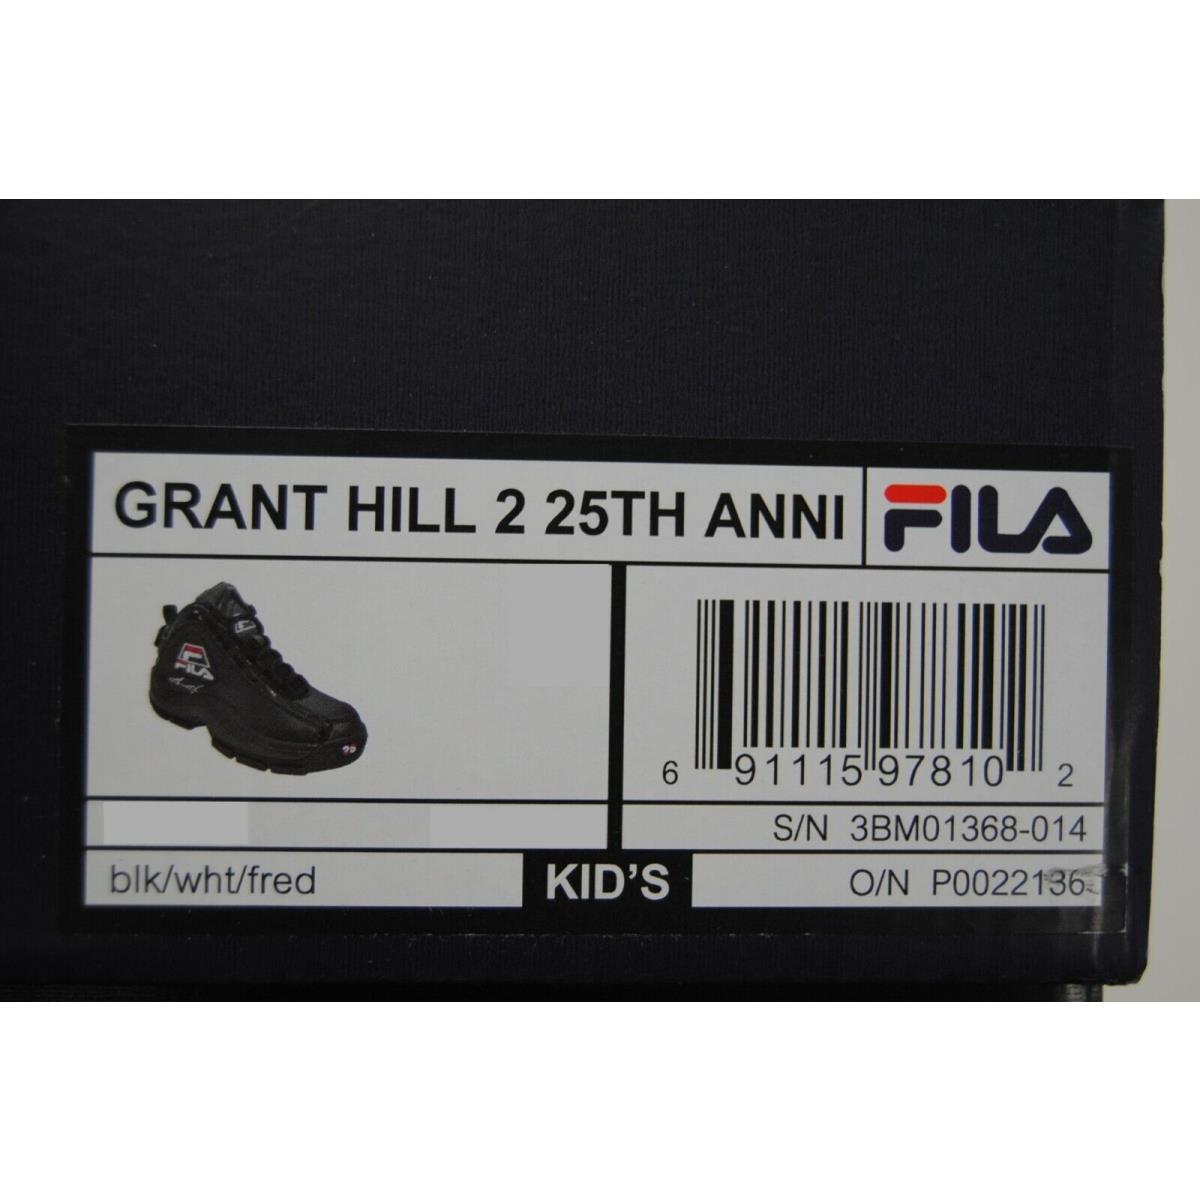 Fila shoes GRANT HILL - Multi-Color 7